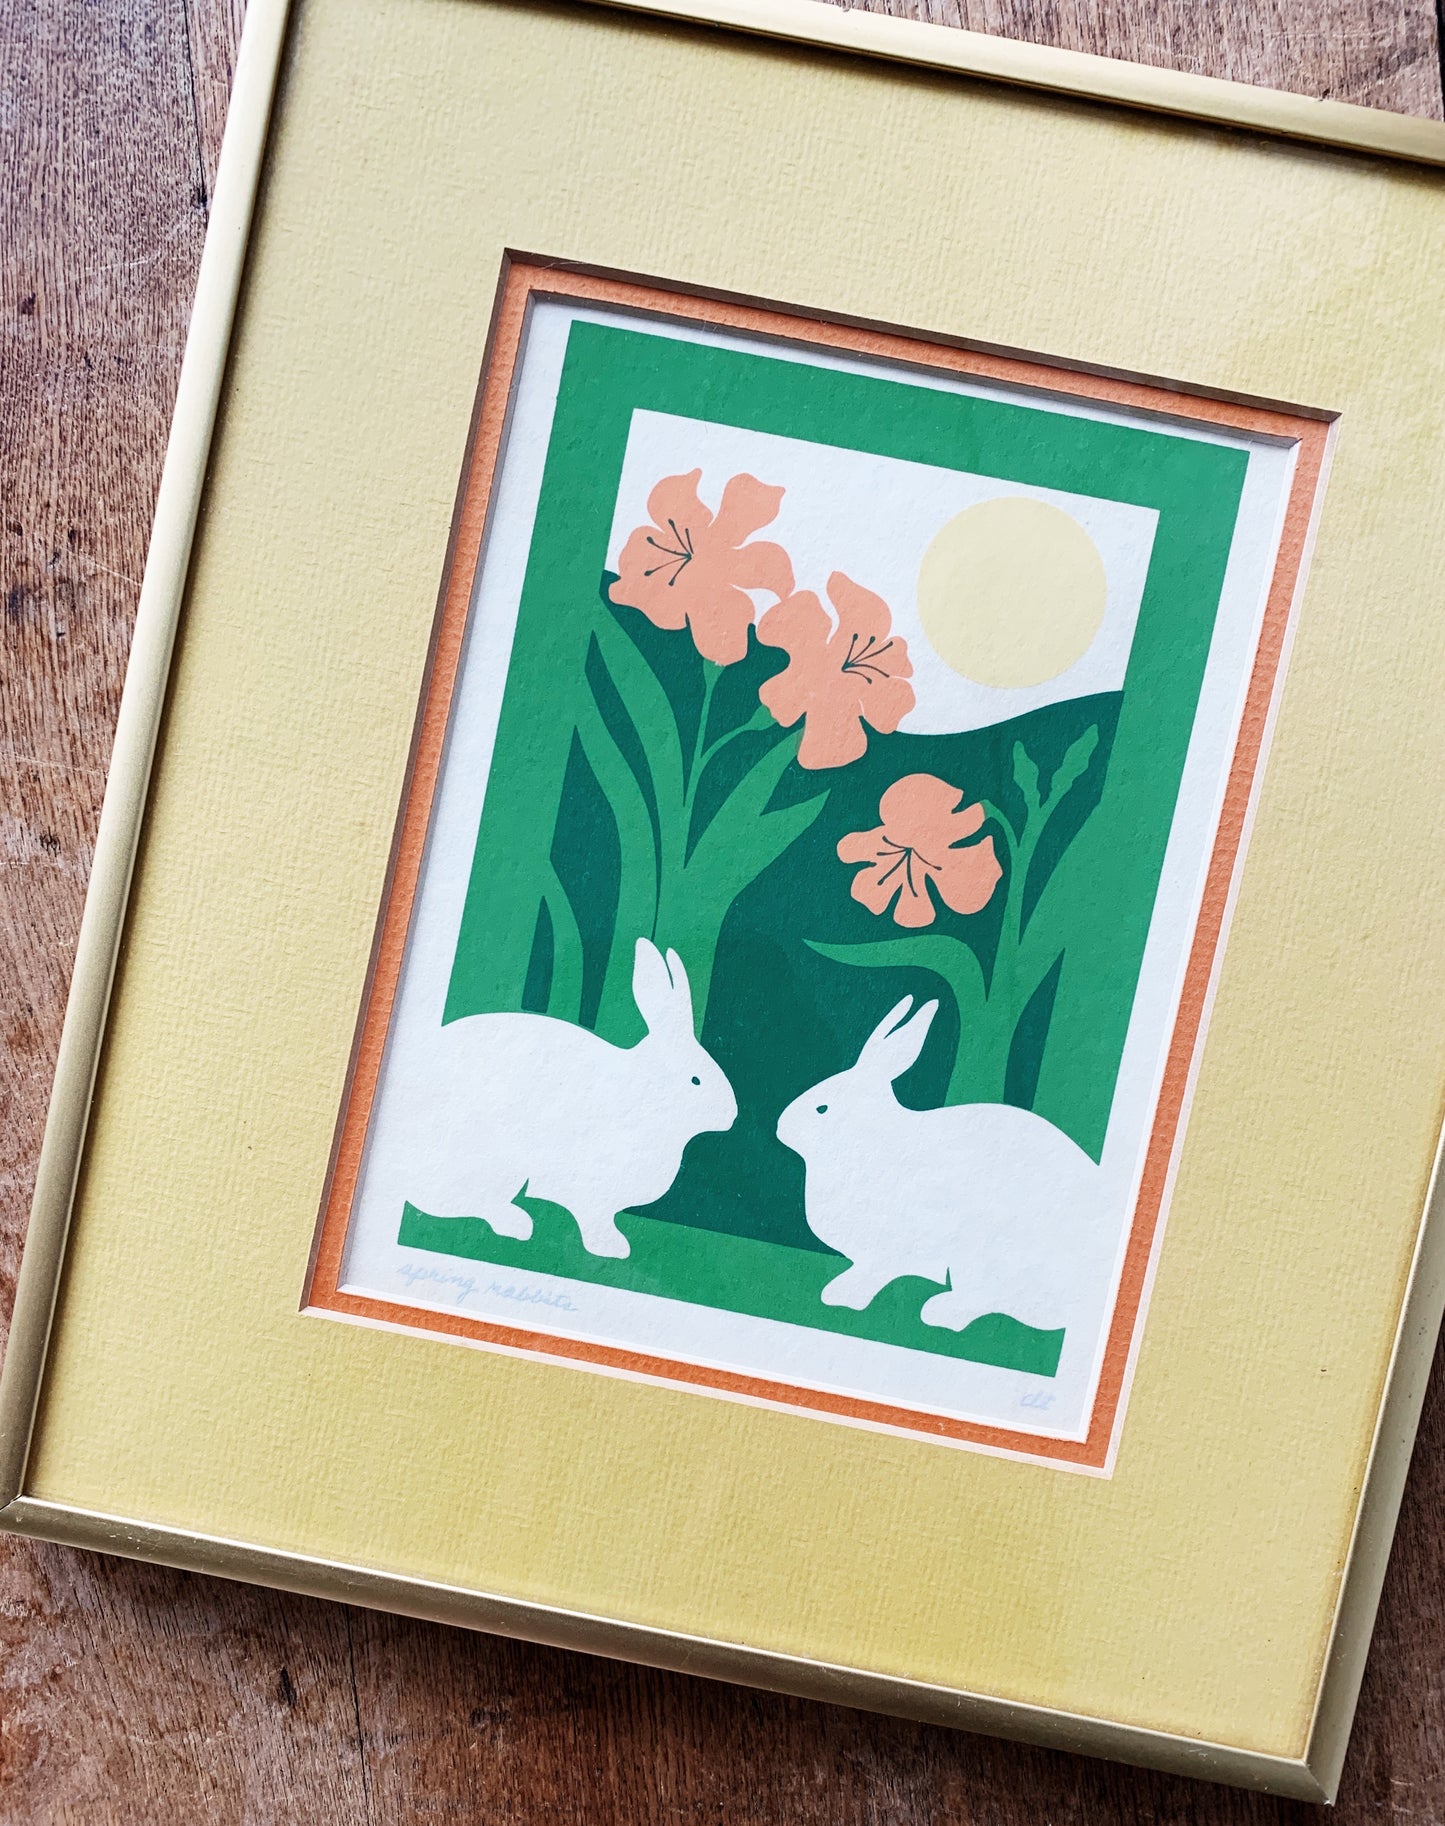 Original Signed Vintage Print ‘Spring Rabbits’